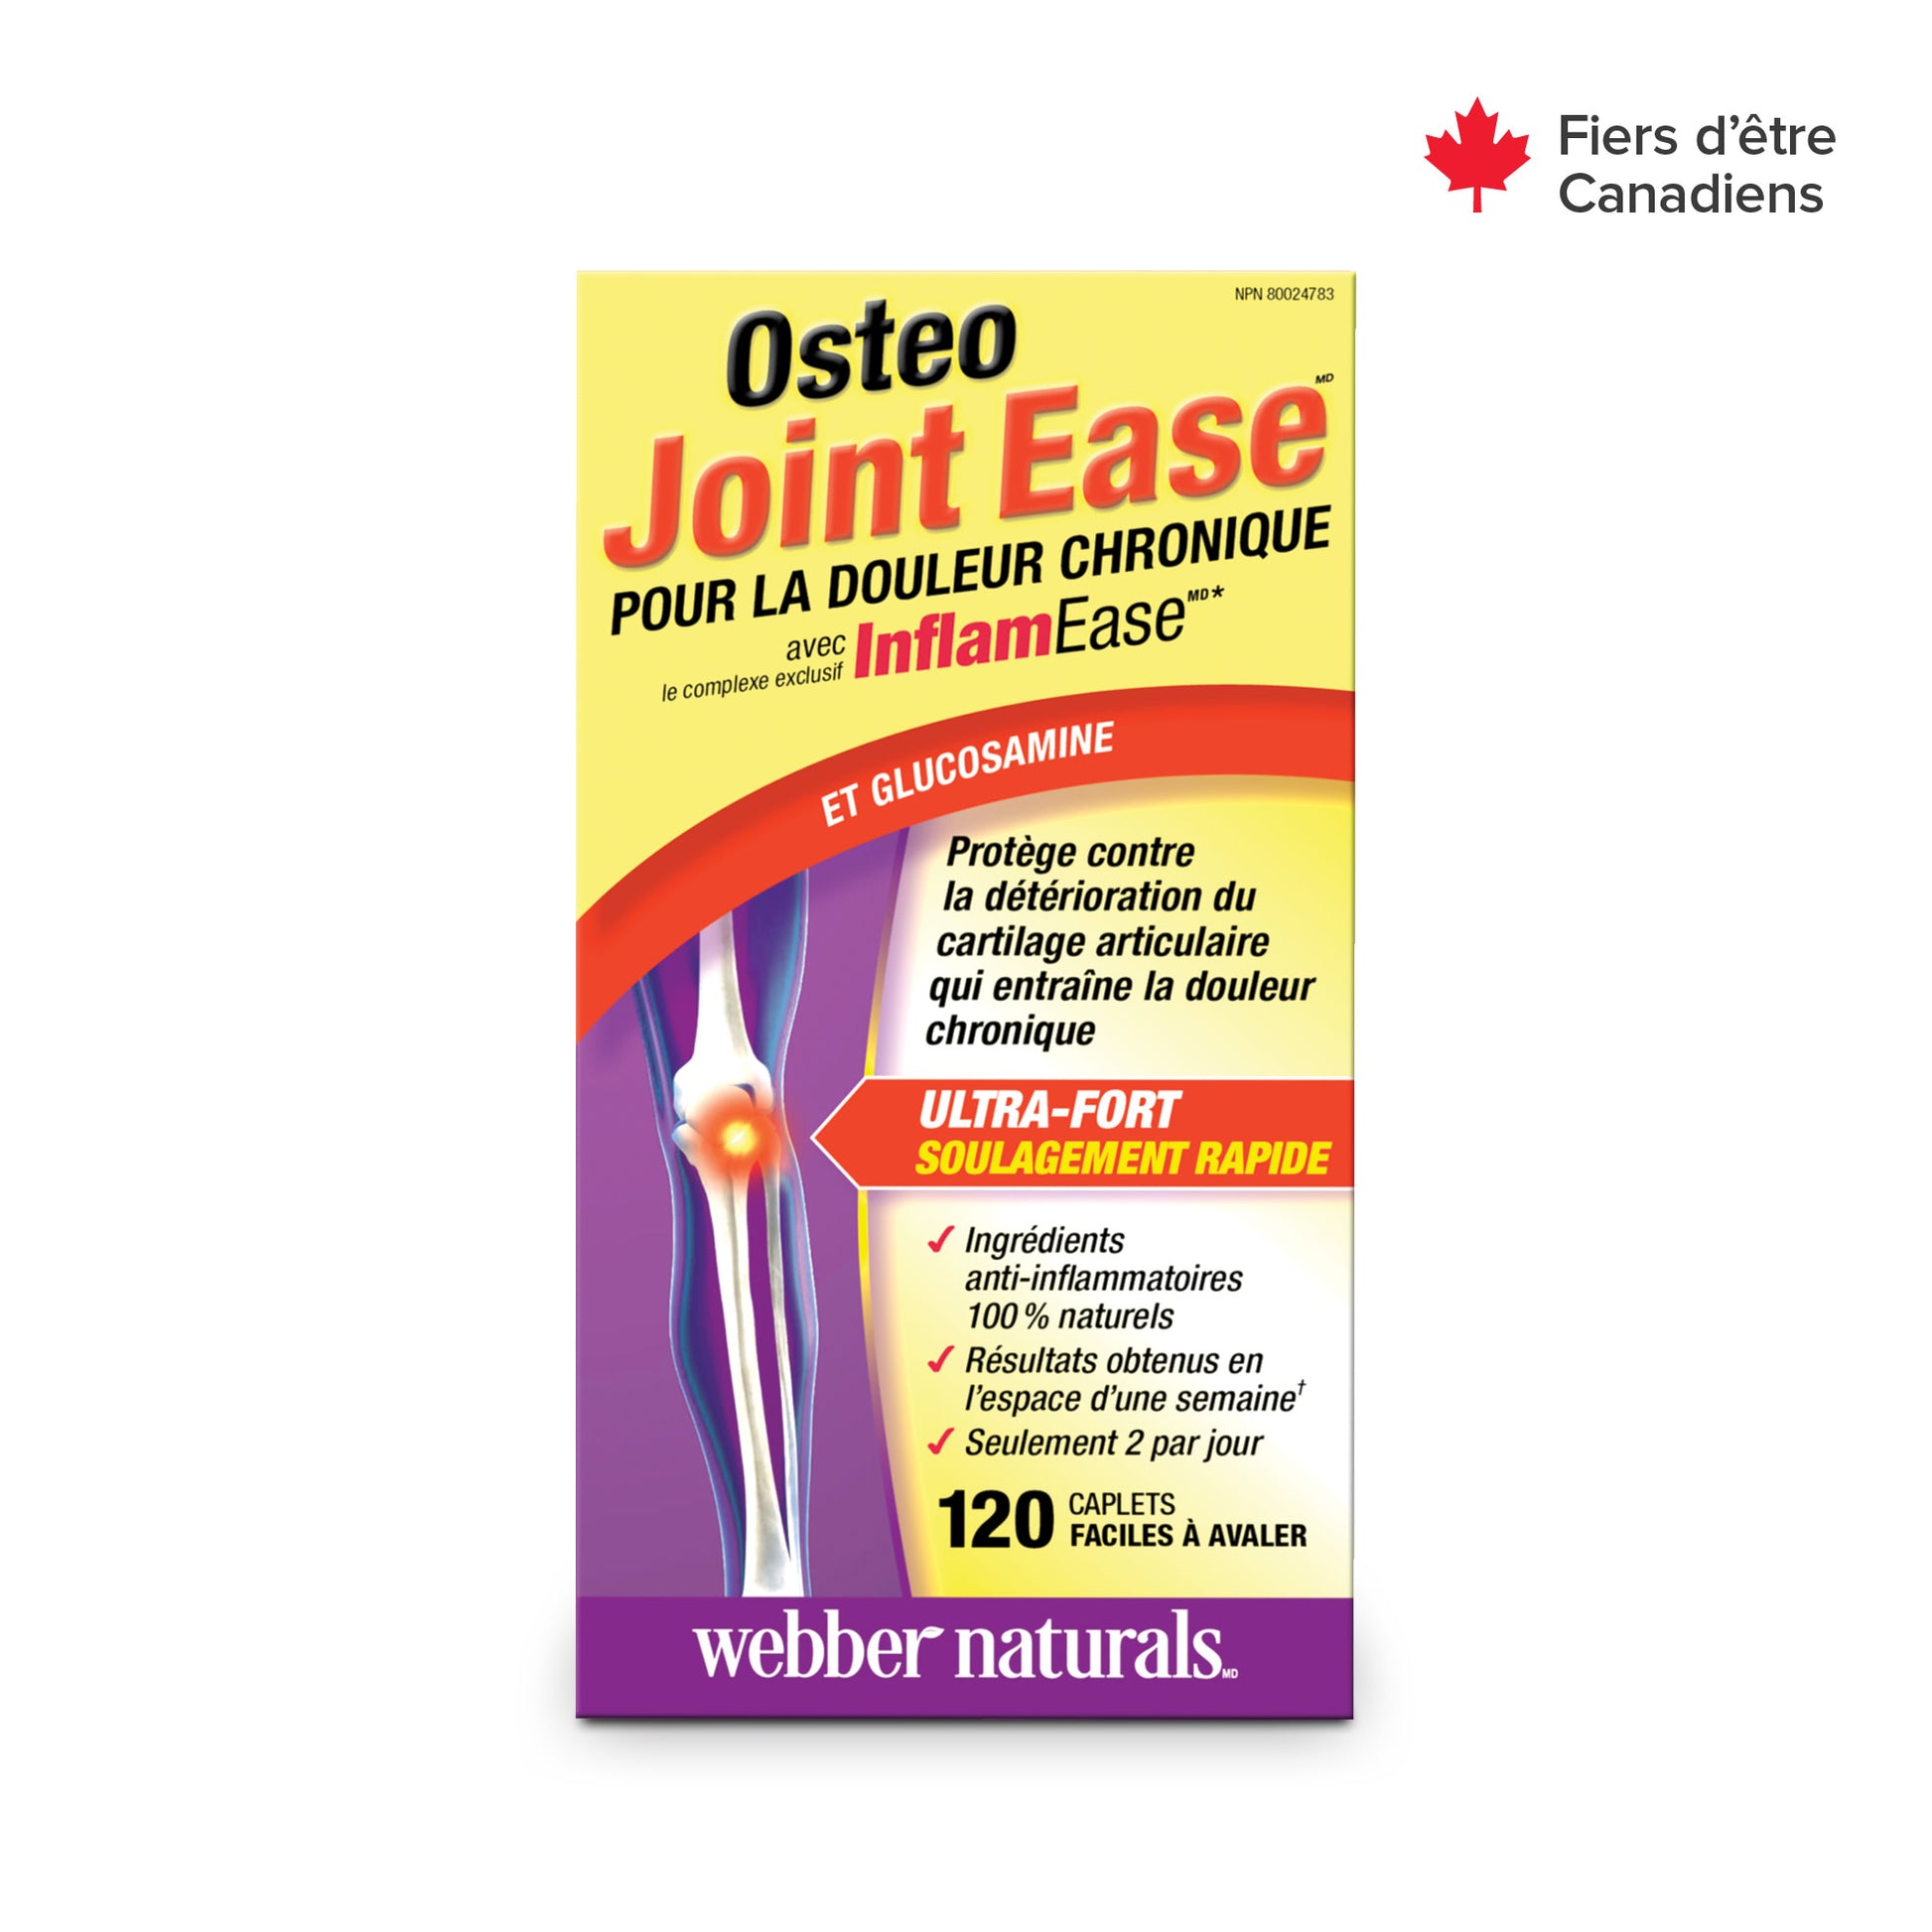 Osteo Joint Ease avec InflamEase et Glucosamine for Webber Naturals|v|hi-res|WN3374